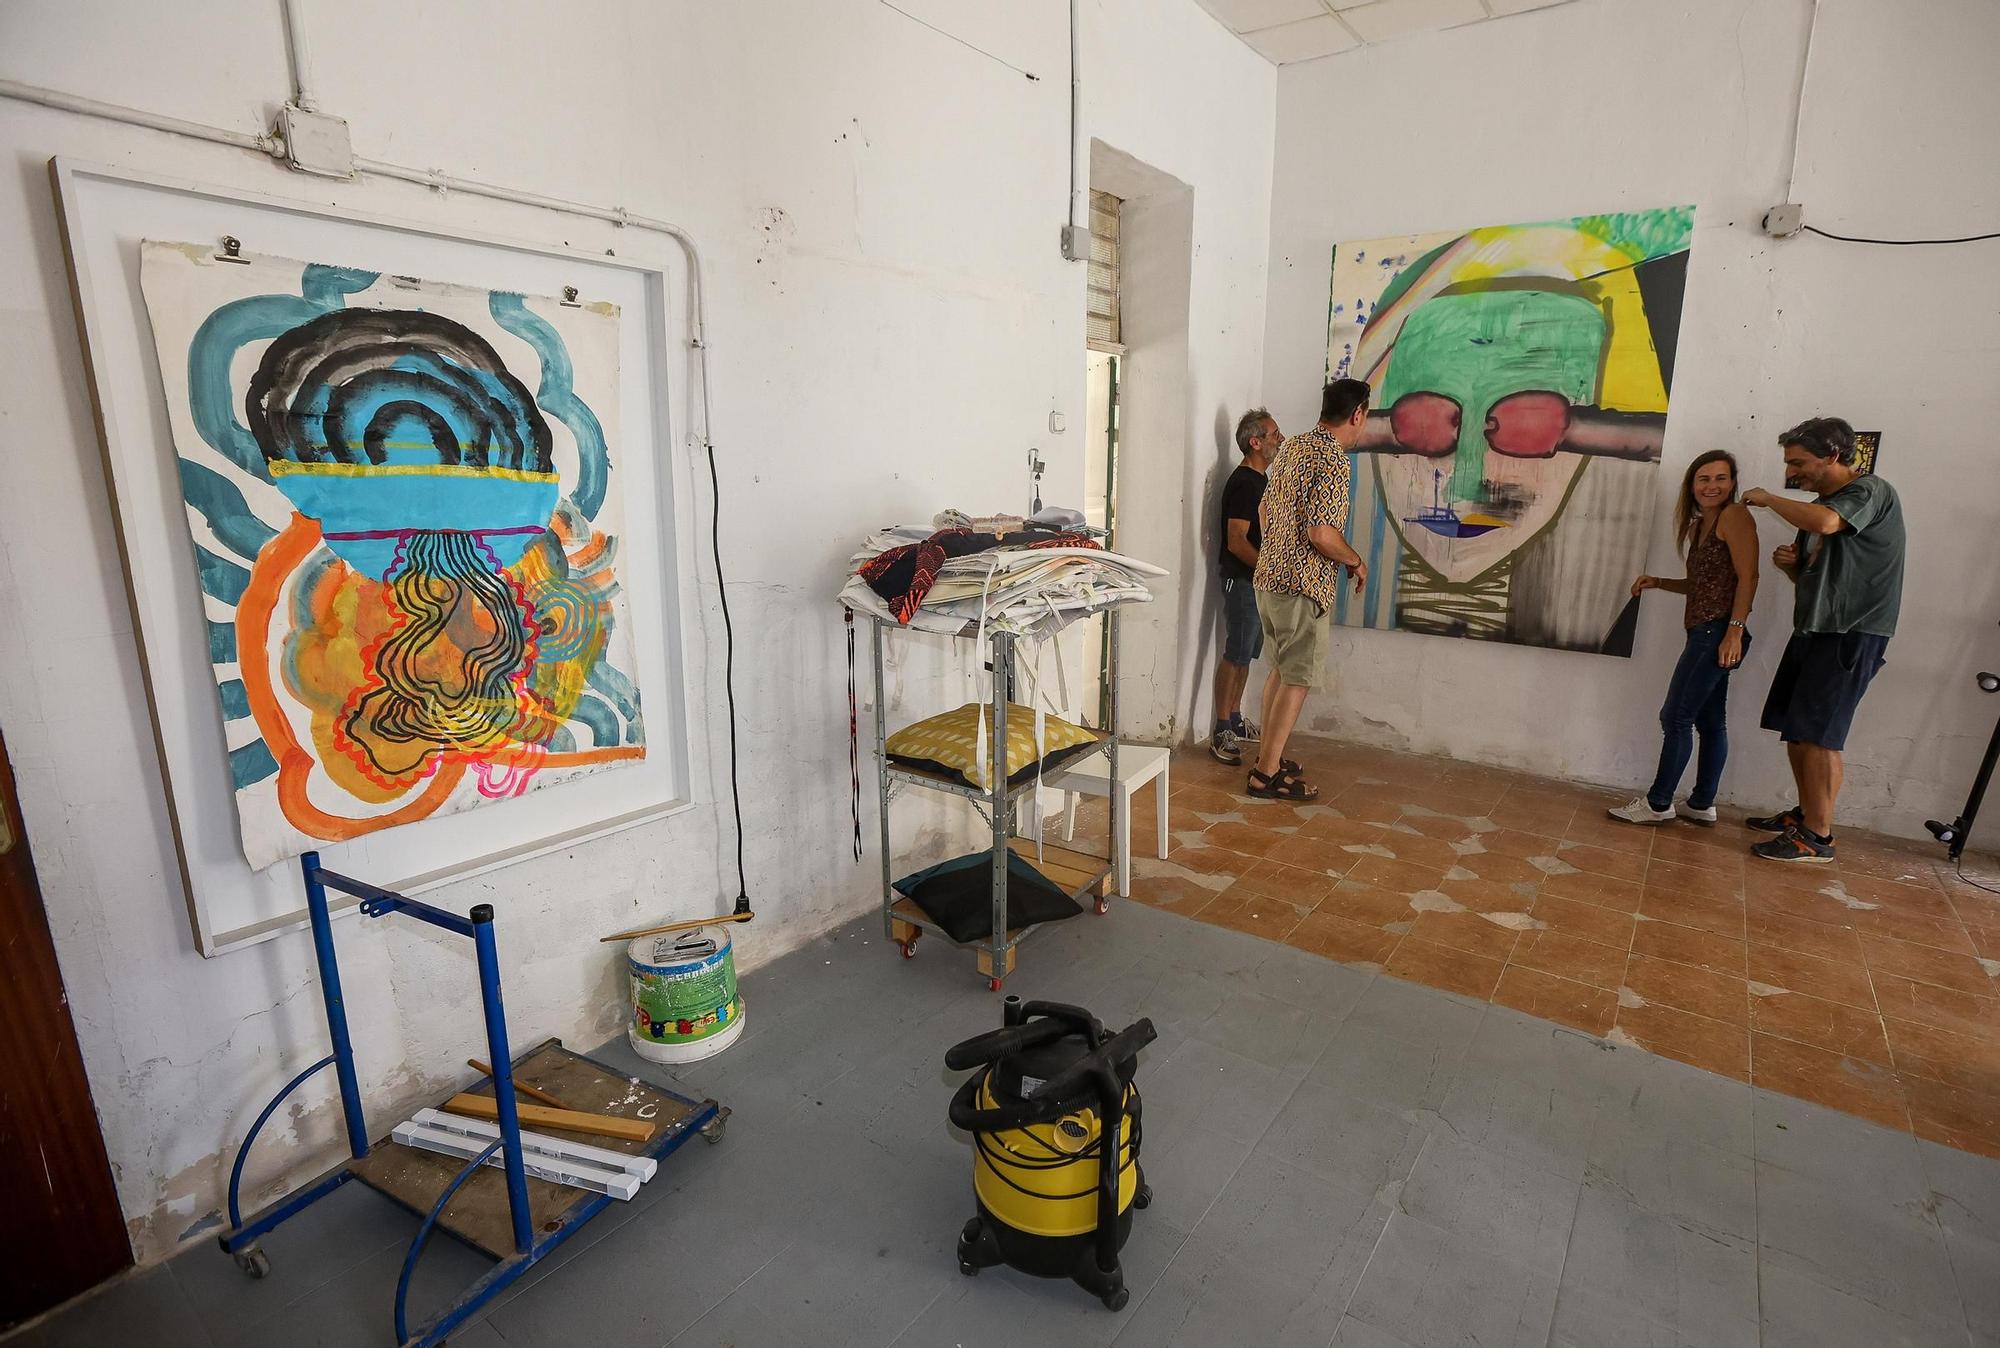 Siete artistas muestran sus obras del 22 al 24 de septiembre en el estudio del pintor alicantino David Delgado